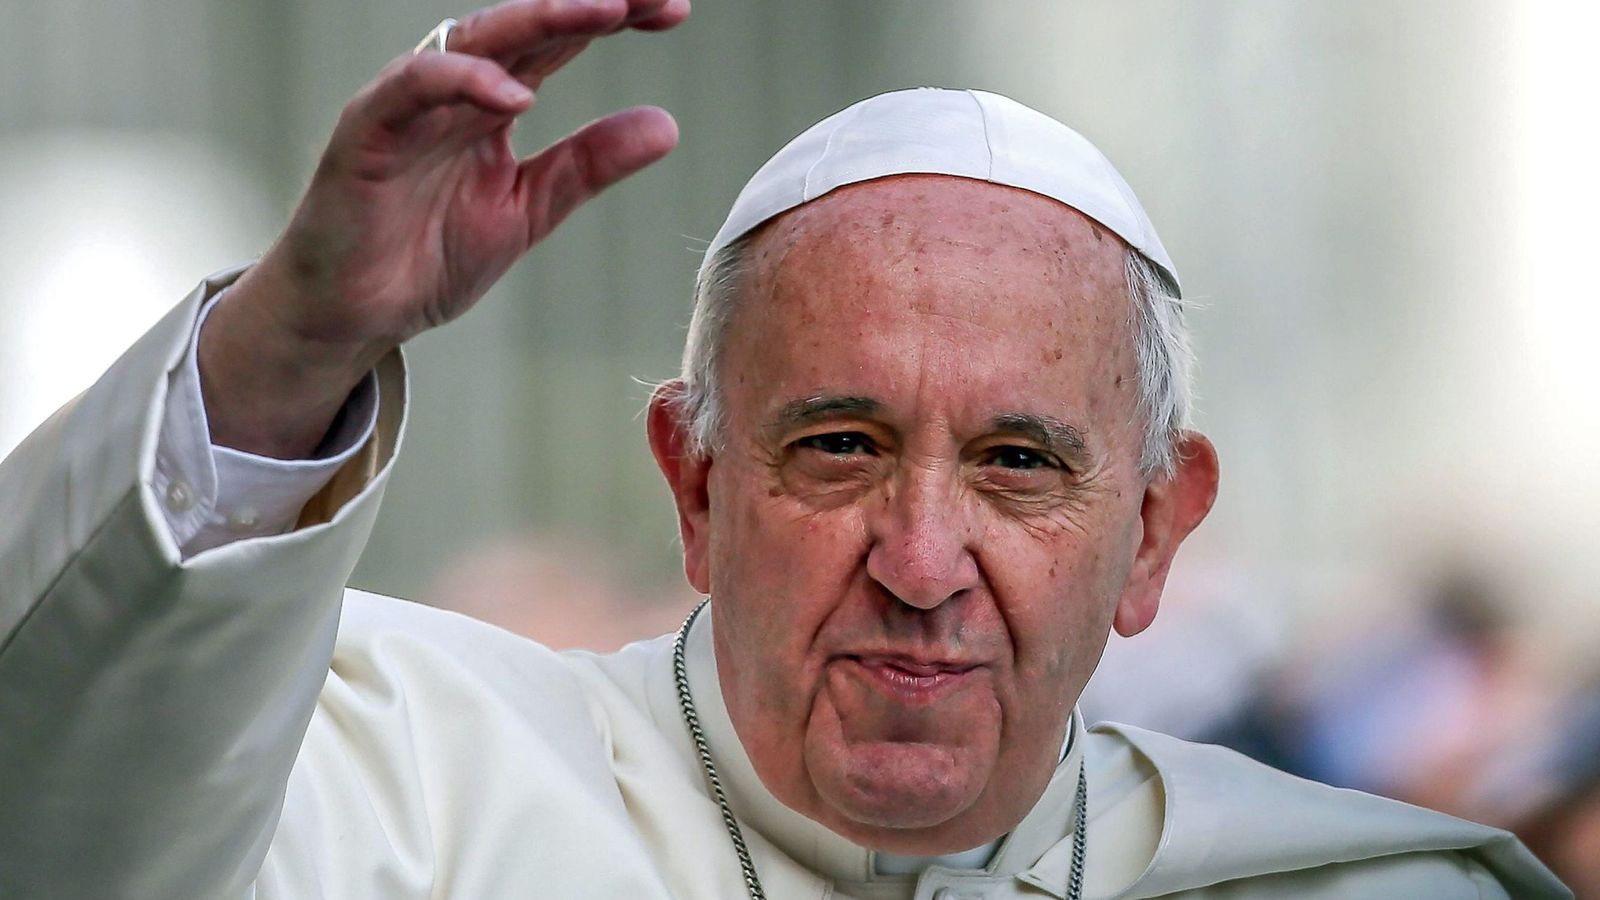 El Papa Francisco abre la puerta de la Iglesia a divorciados y homosexuales